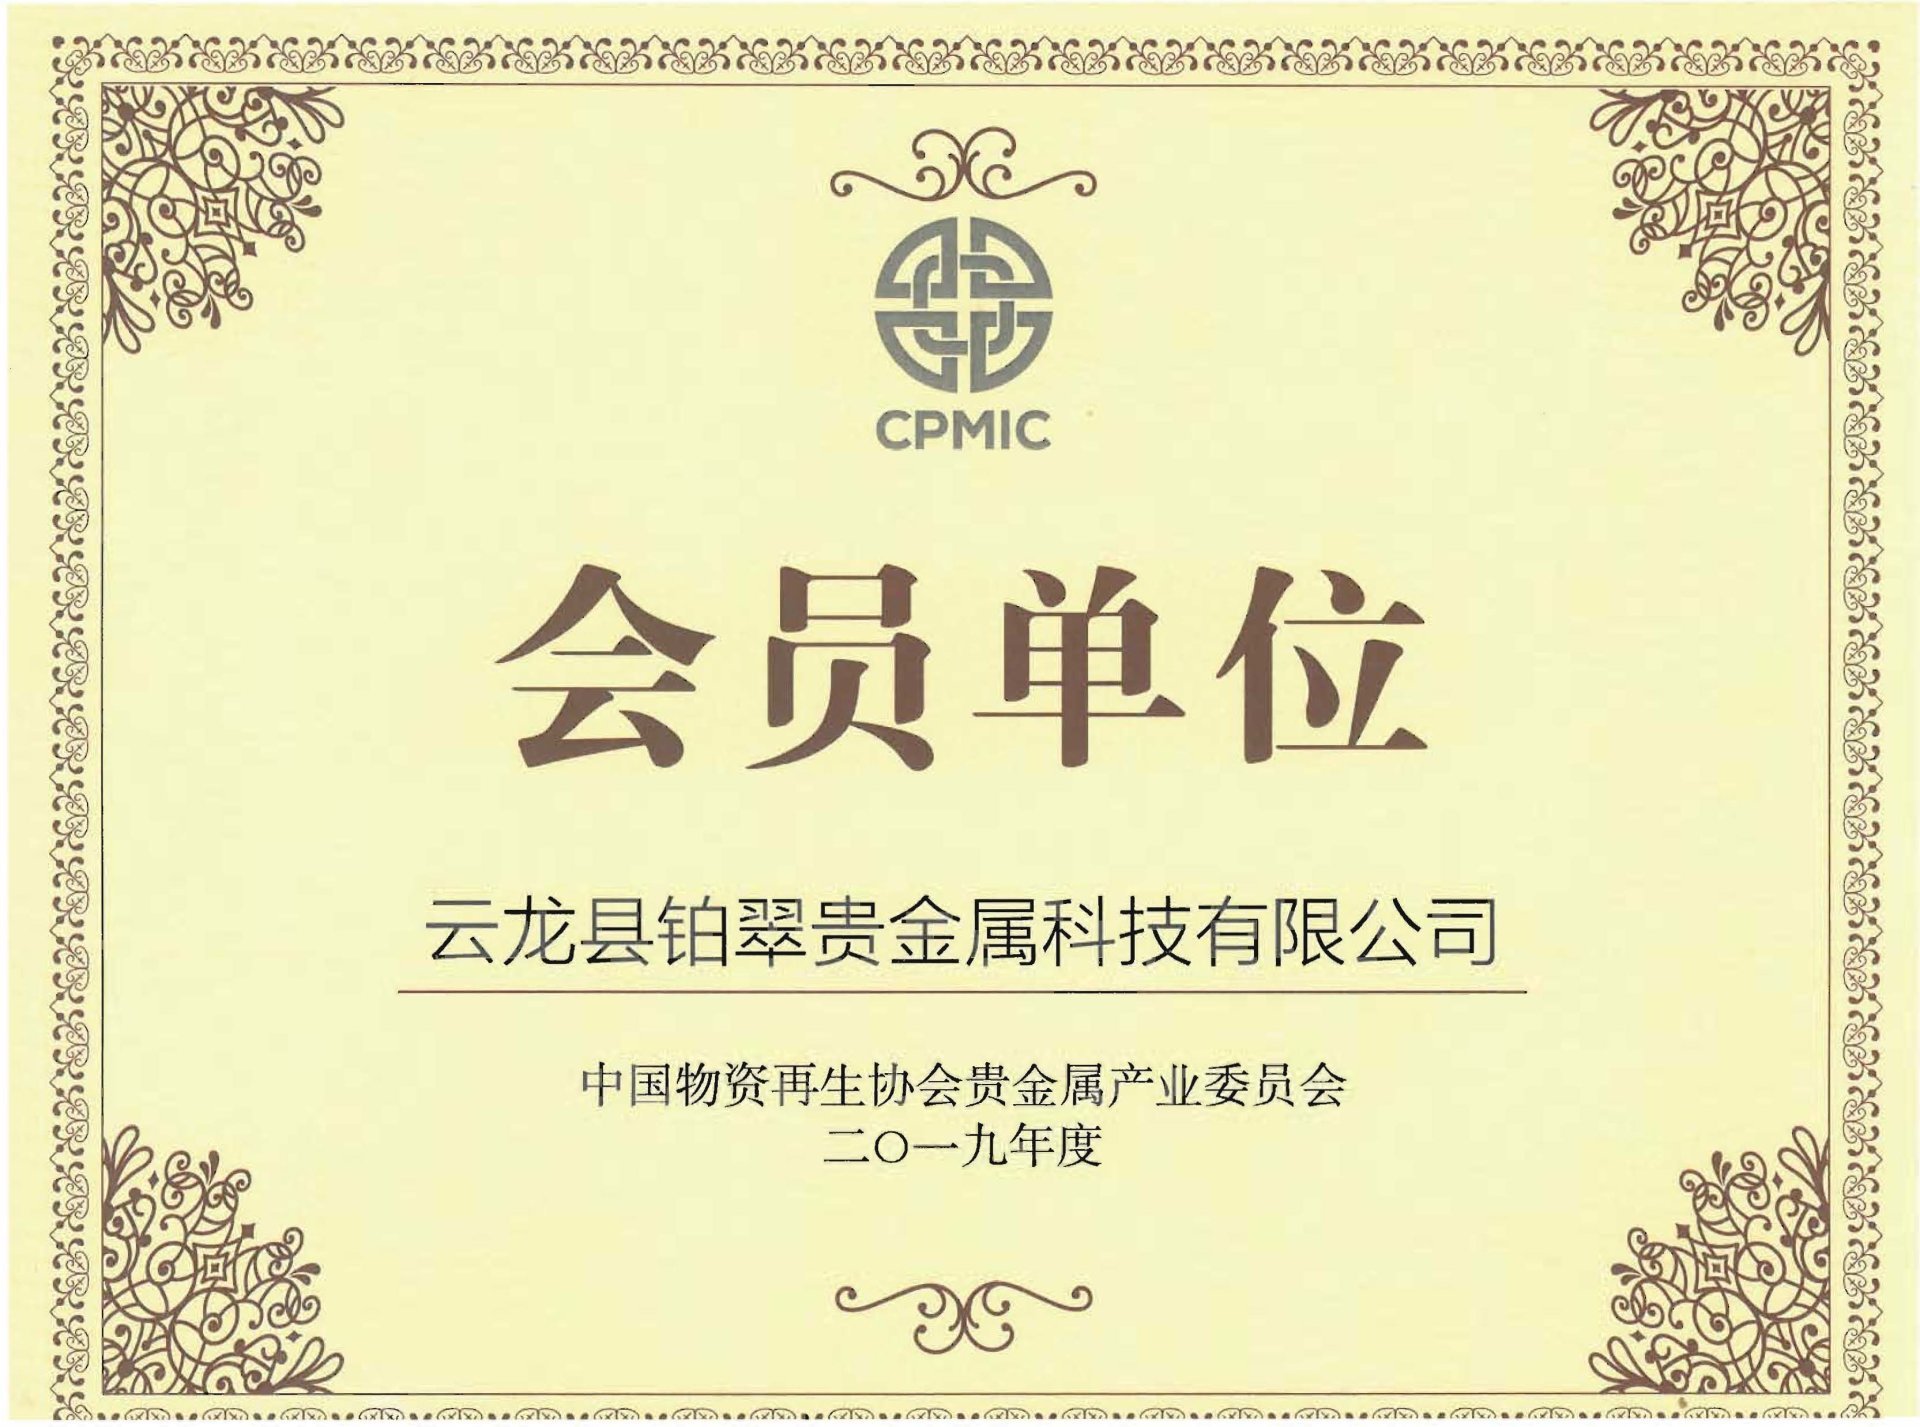 中國物資再生協會貴金屬再生專業委員會會員單位